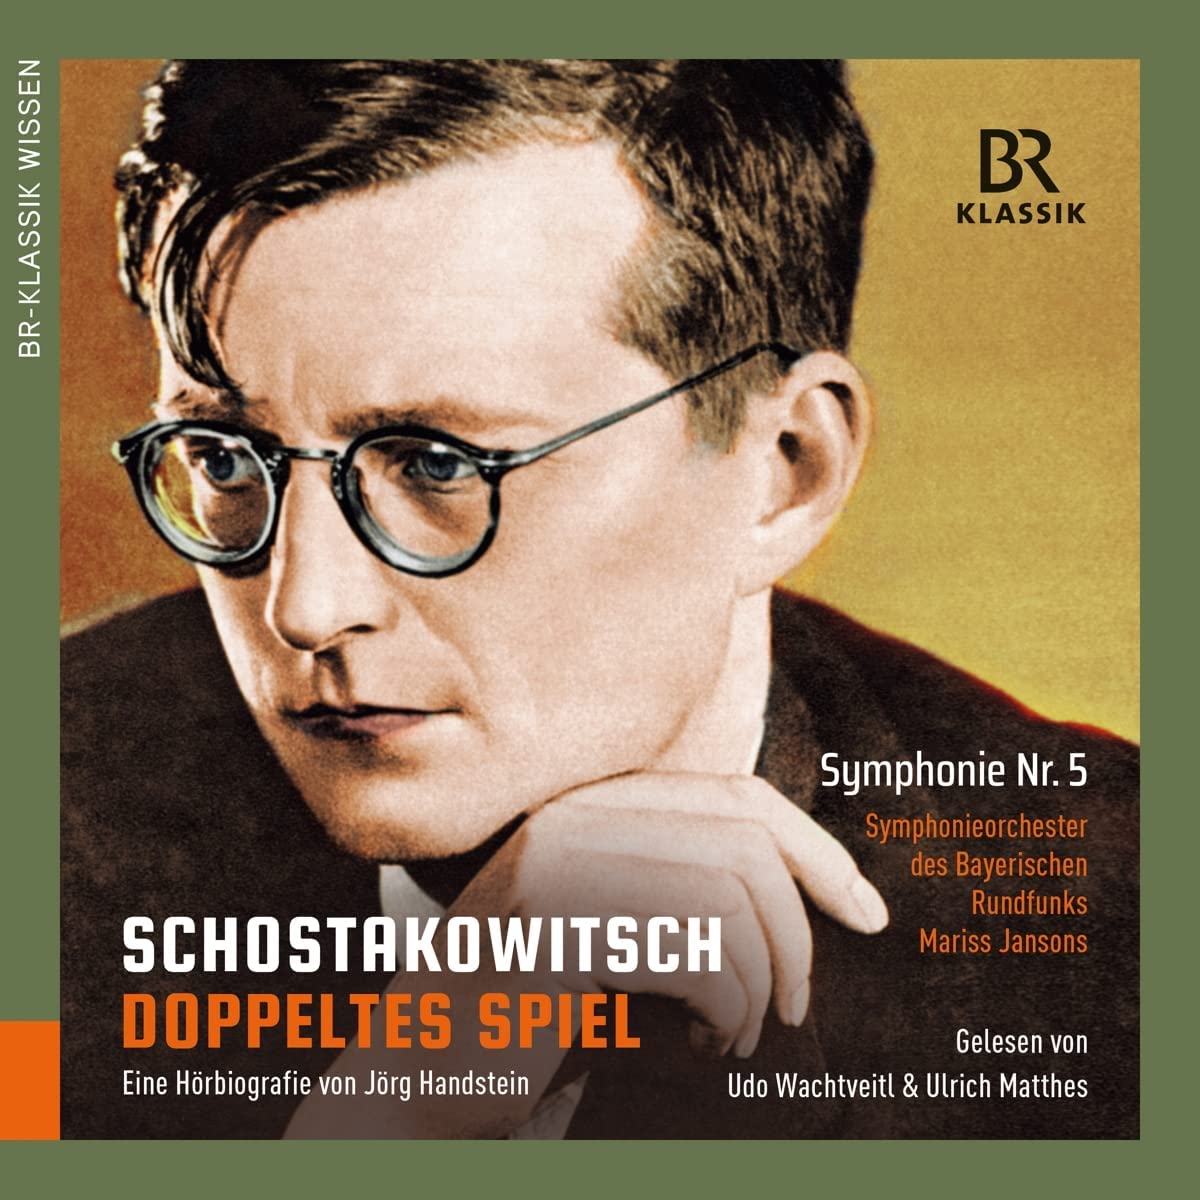 Audio Cd Dmitri Shostakovich - Doppeltes Spiel (4 Cd) NUOVO SIGILLATO, EDIZIONE DEL 01/11/2021 SUBITO DISPONIBILE